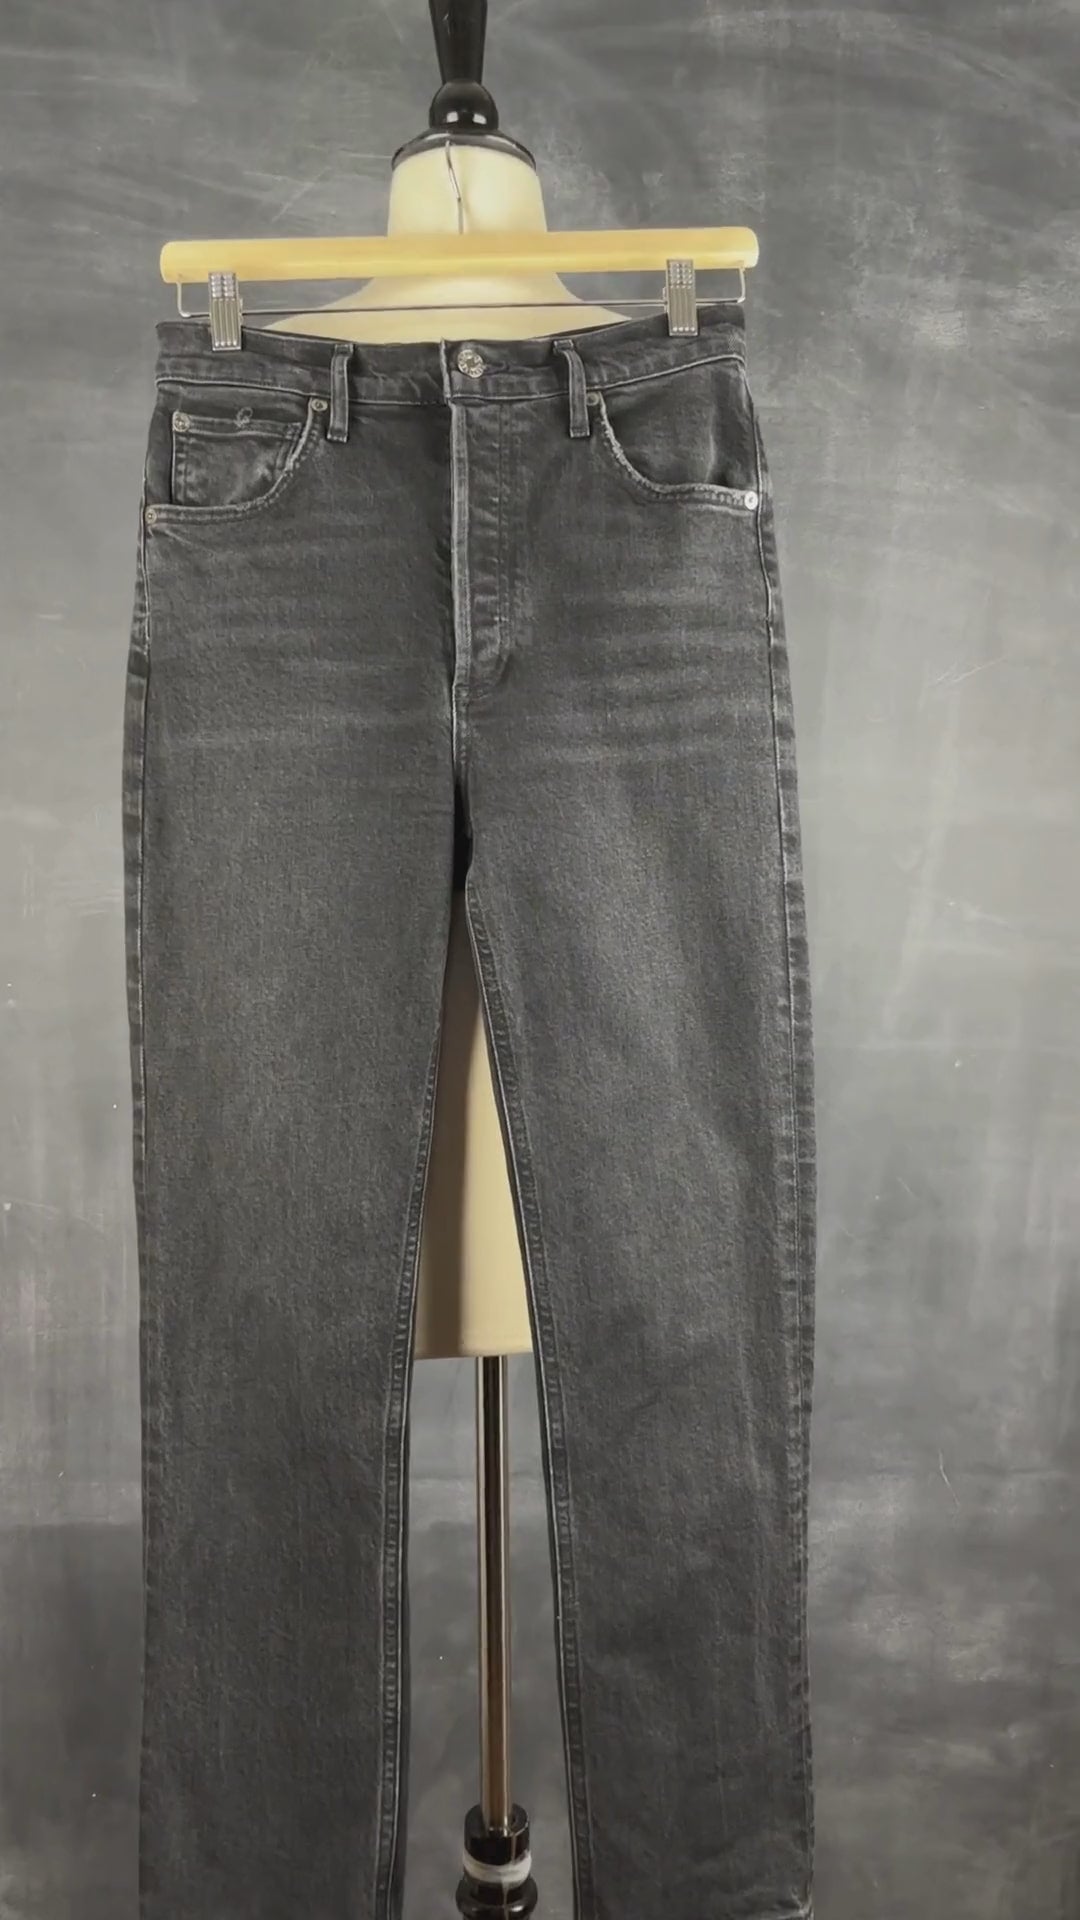 Jeans court droit taille haute Agolde, taille 26. Vue de la vidéo qui présente tous les détails du jean.